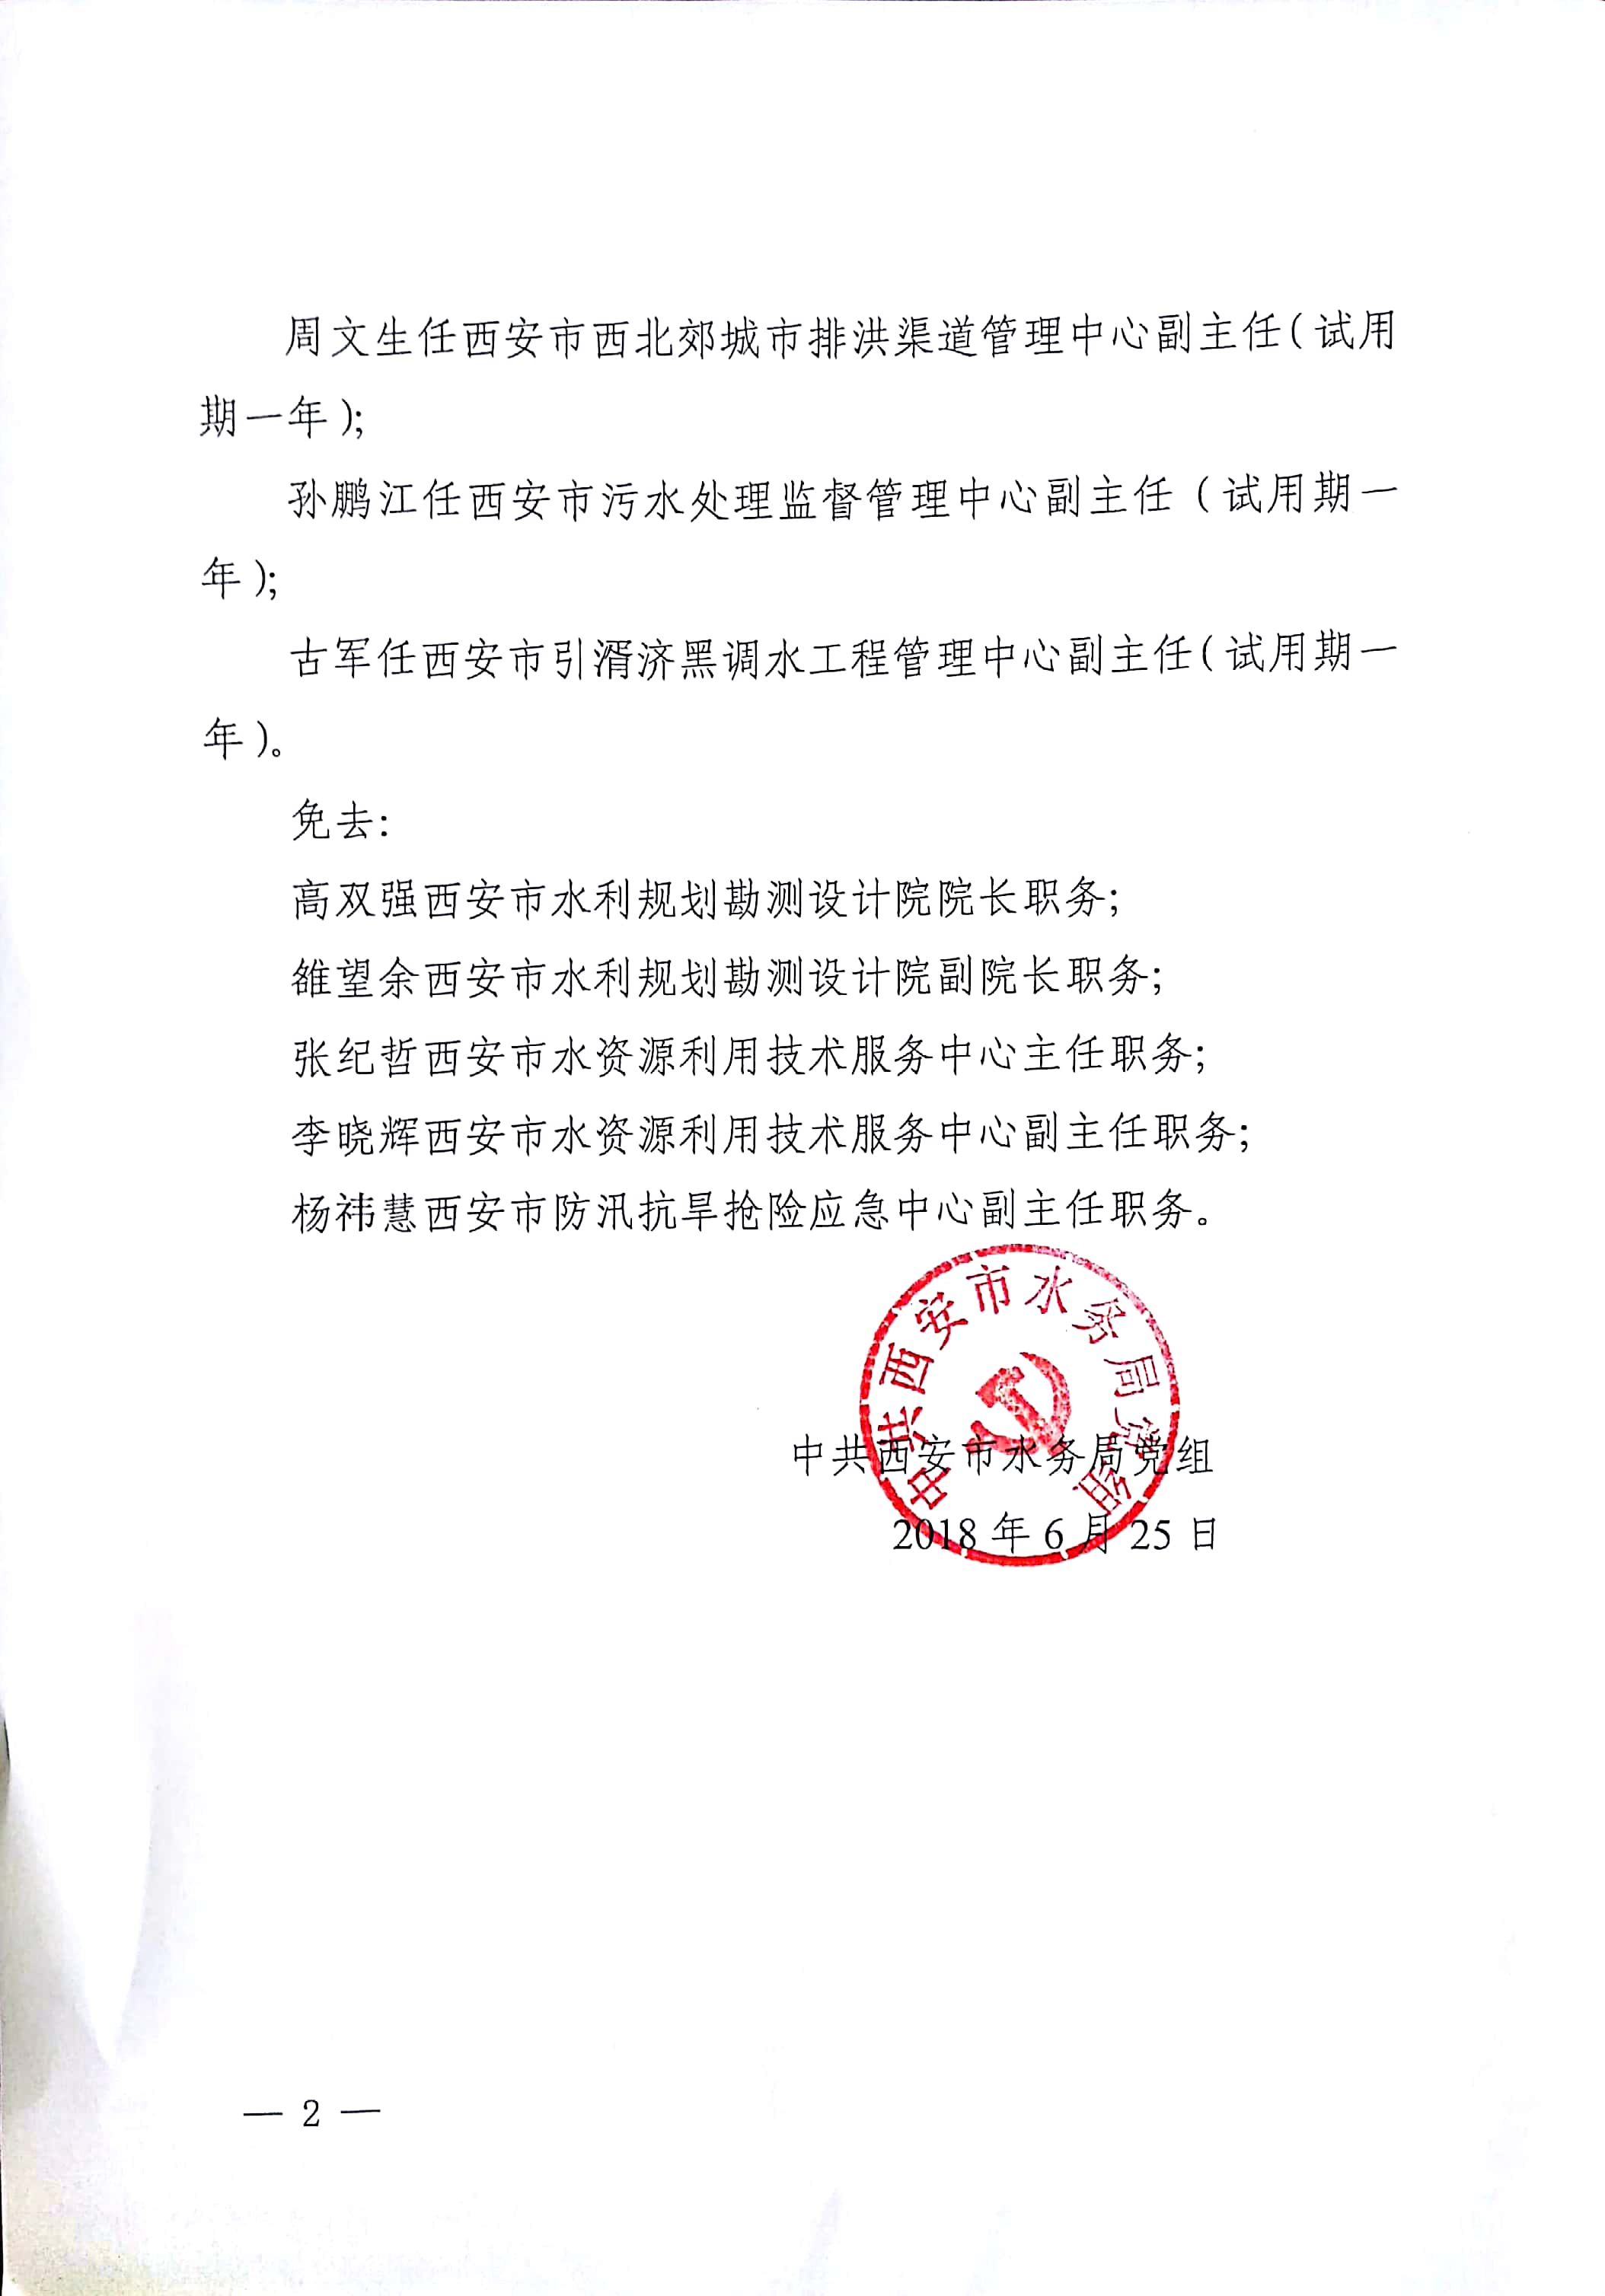 中共西安市水务局党组关于雒望余等同志职务任免的通知